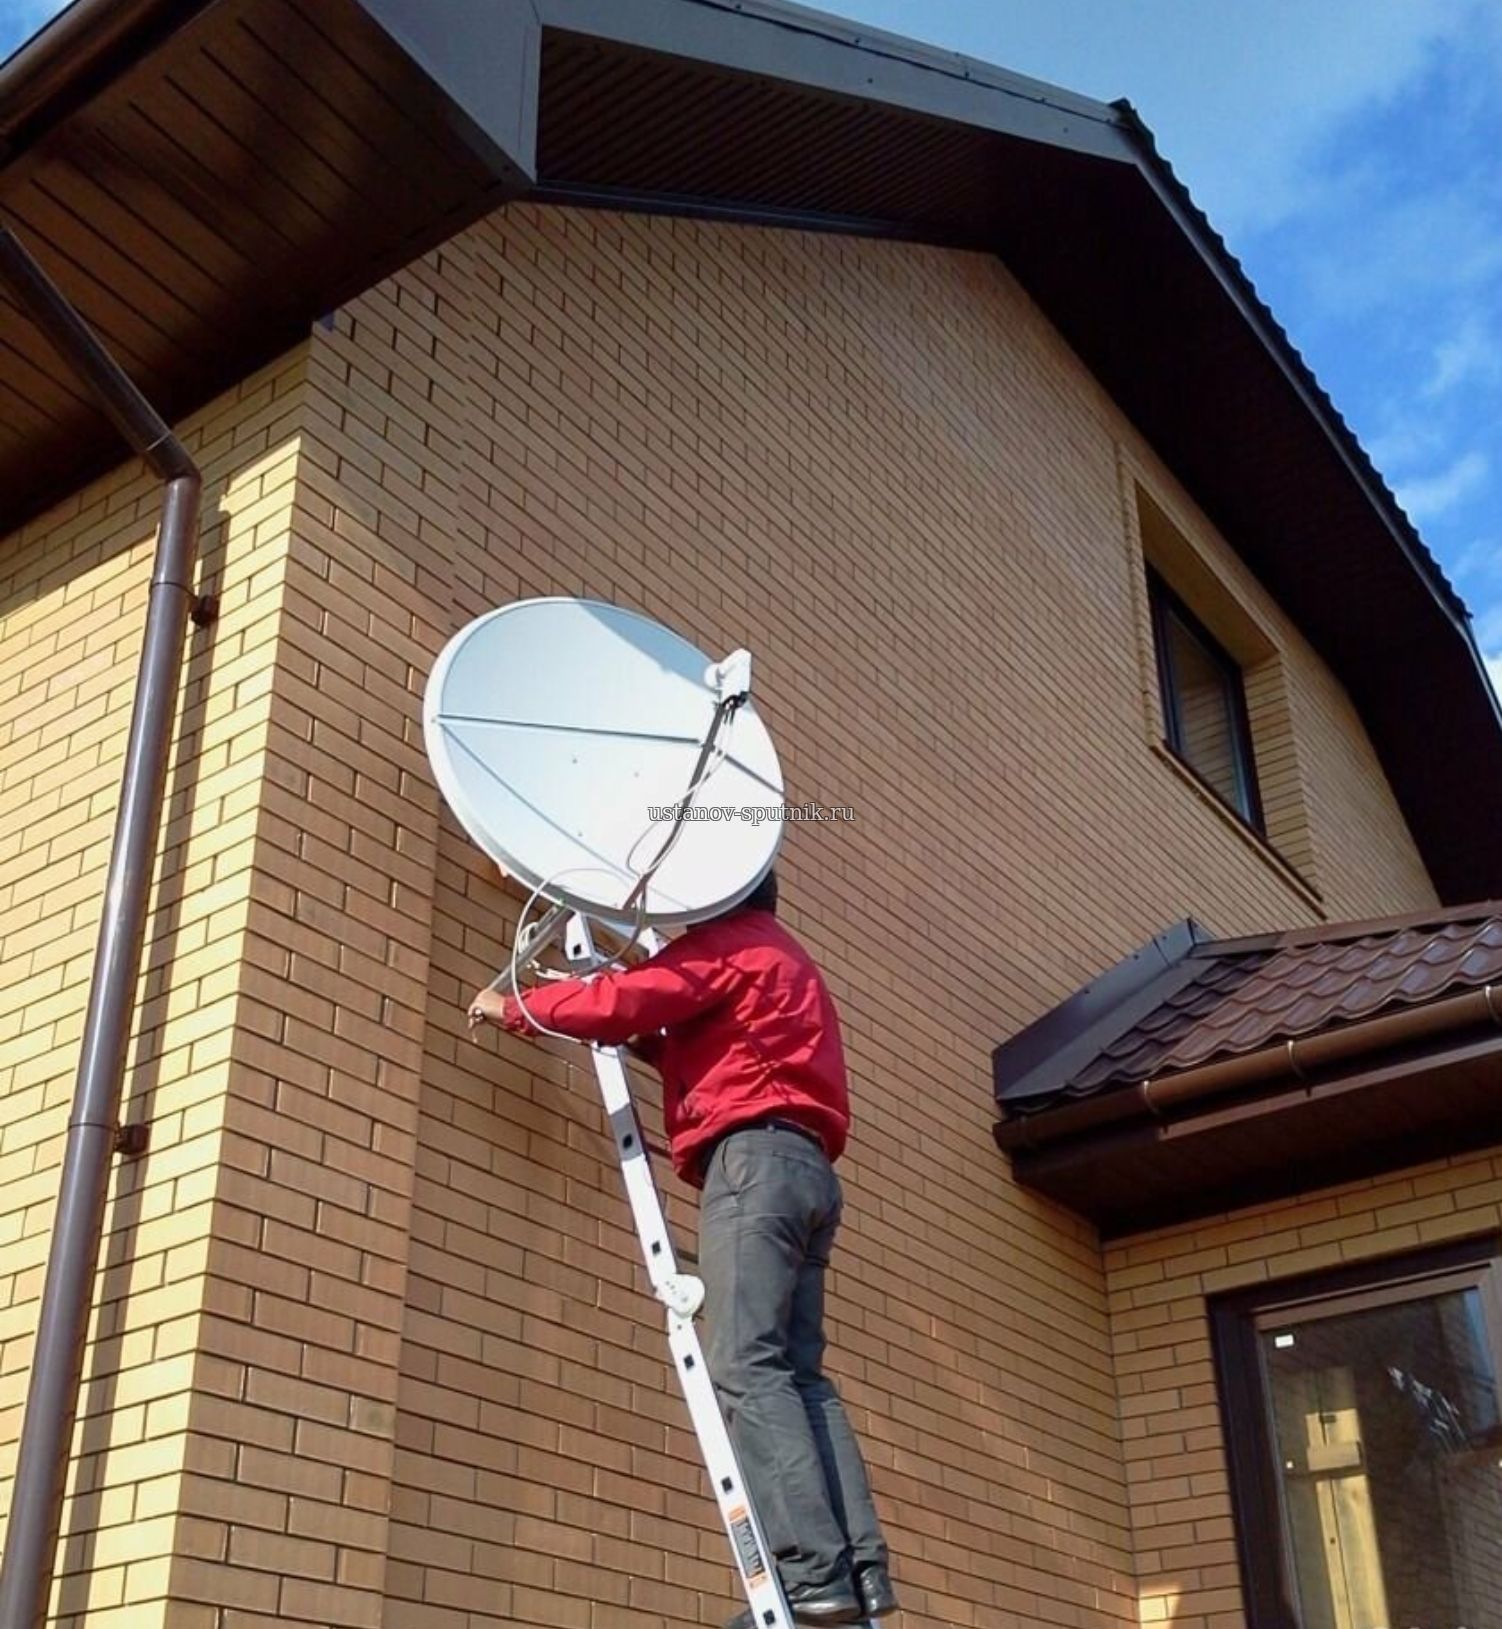 Установка спутниковой антенны Телекарта в частном загородном доме, мастер стоит на лестнице и настраивает спутниковую антенну, Голубой залив, новосибирская область 